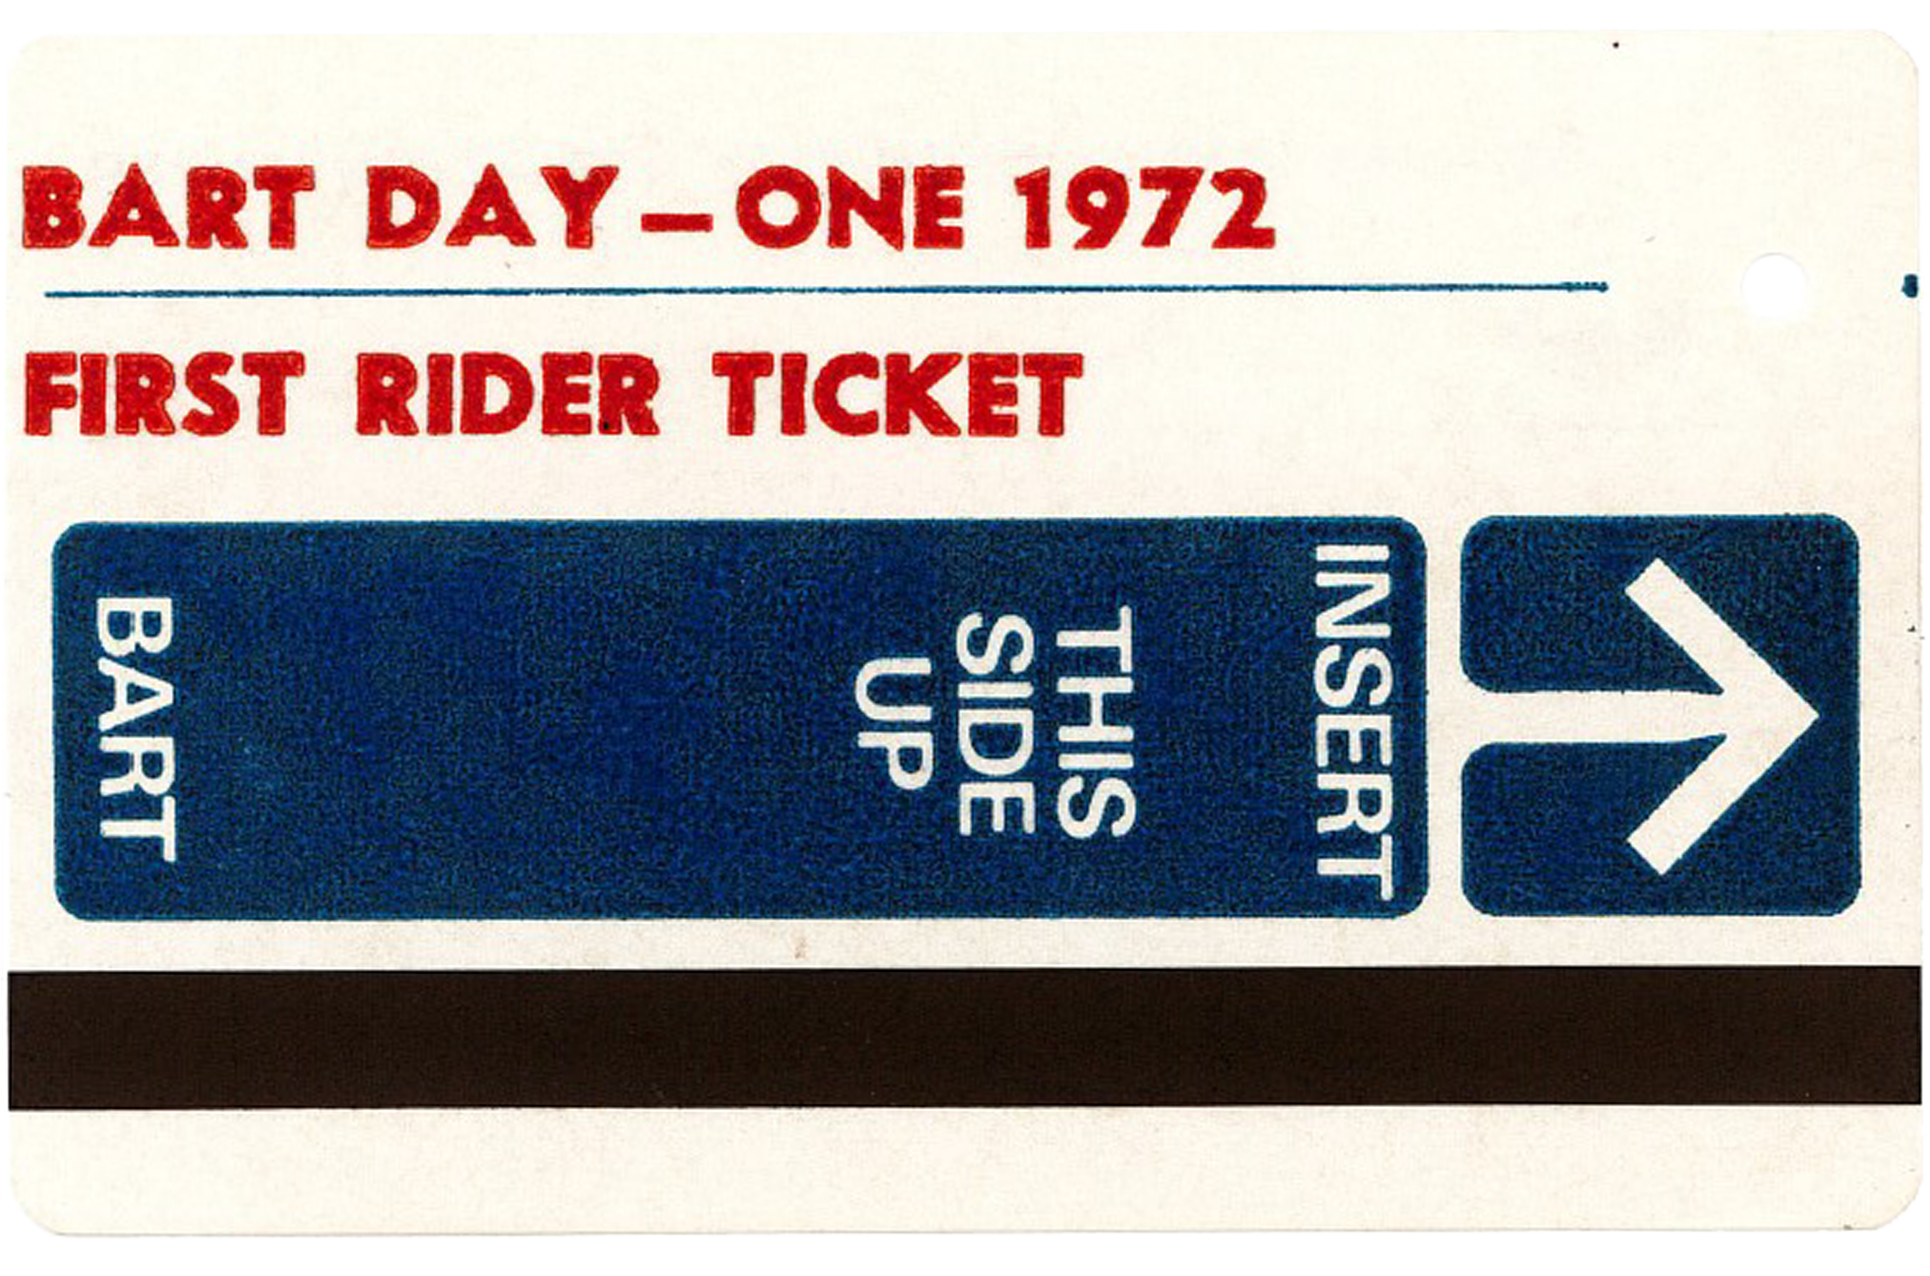 BART Day-One First Rider Ticket